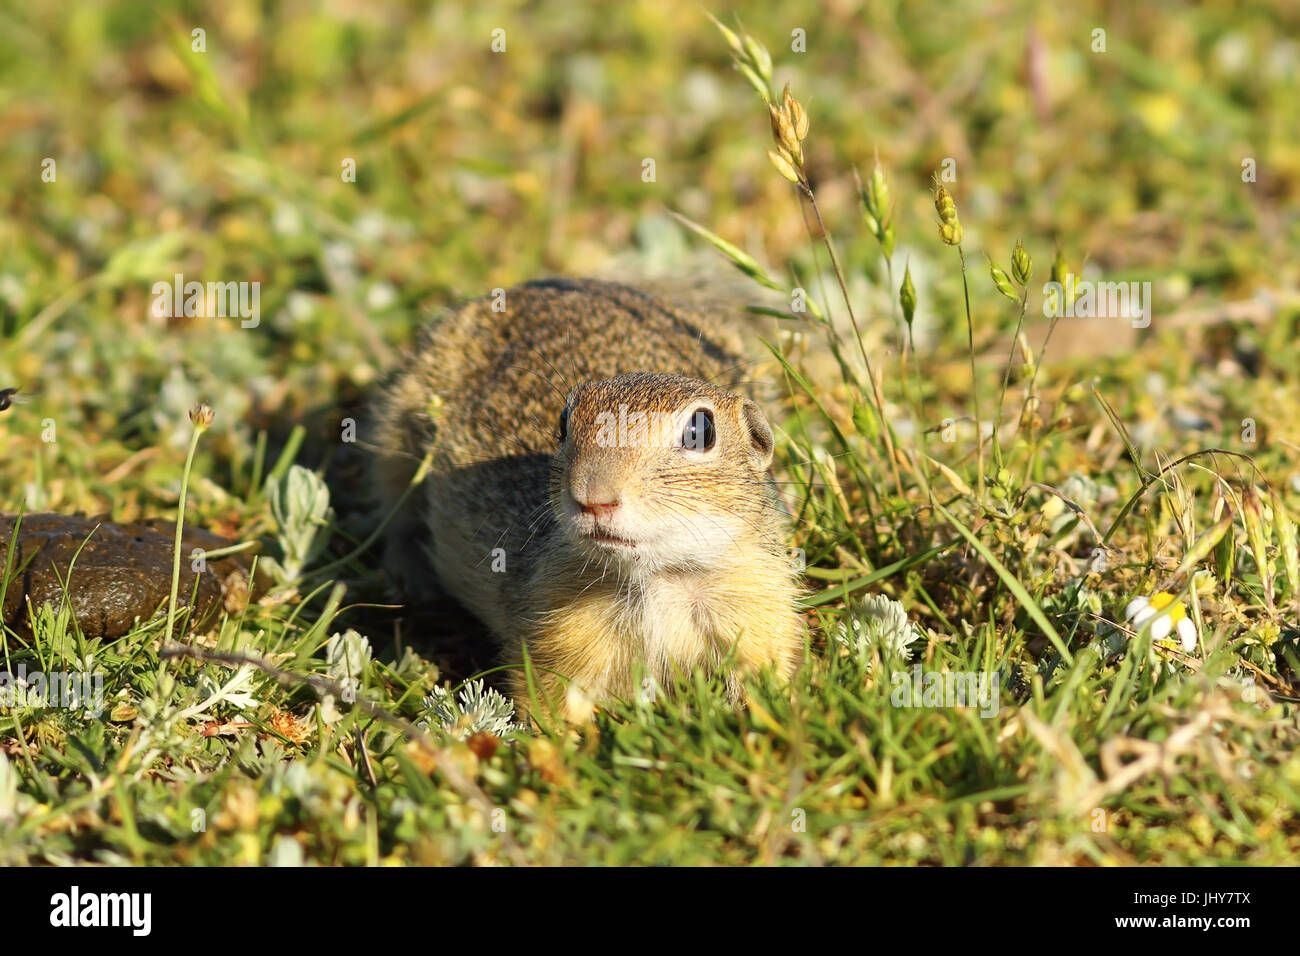 Curioso il novellame di terreno europeo scoiattolo guardando la telecamera ( Spermophilus citellus ), immagine presa in habitat naturale su animali selvatici Foto Stock